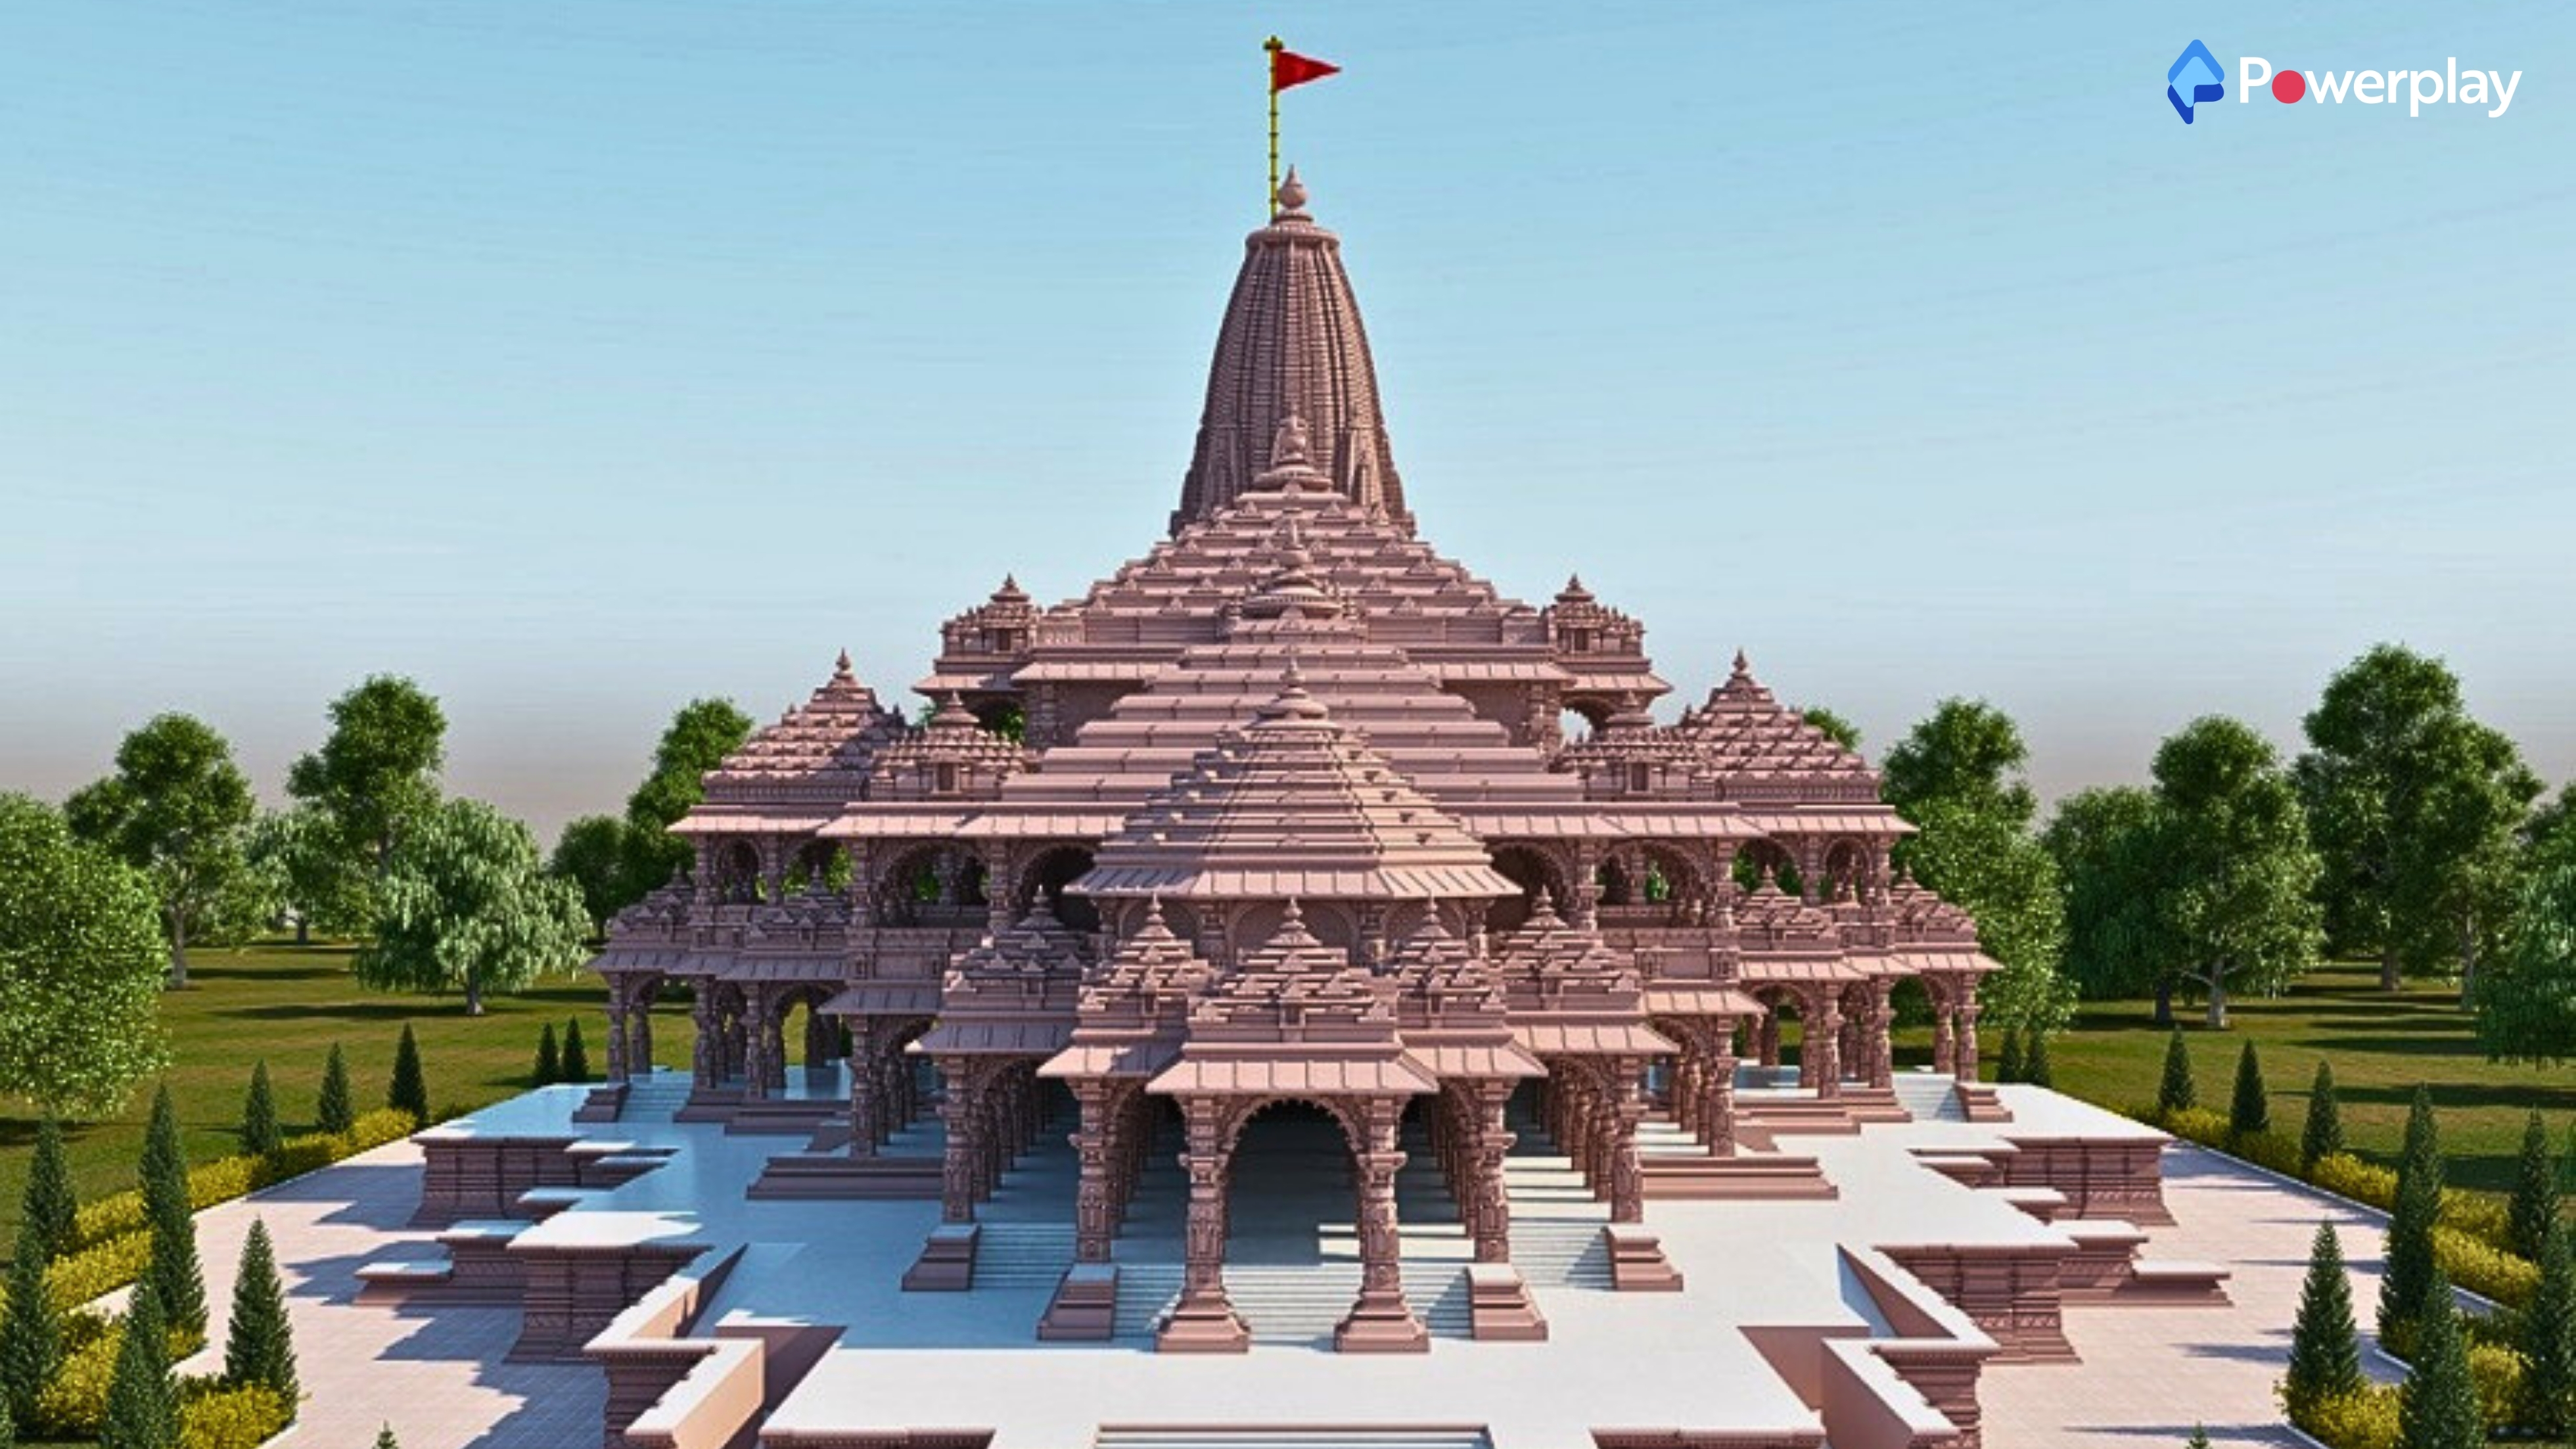 Ayodhya’s Ram temple